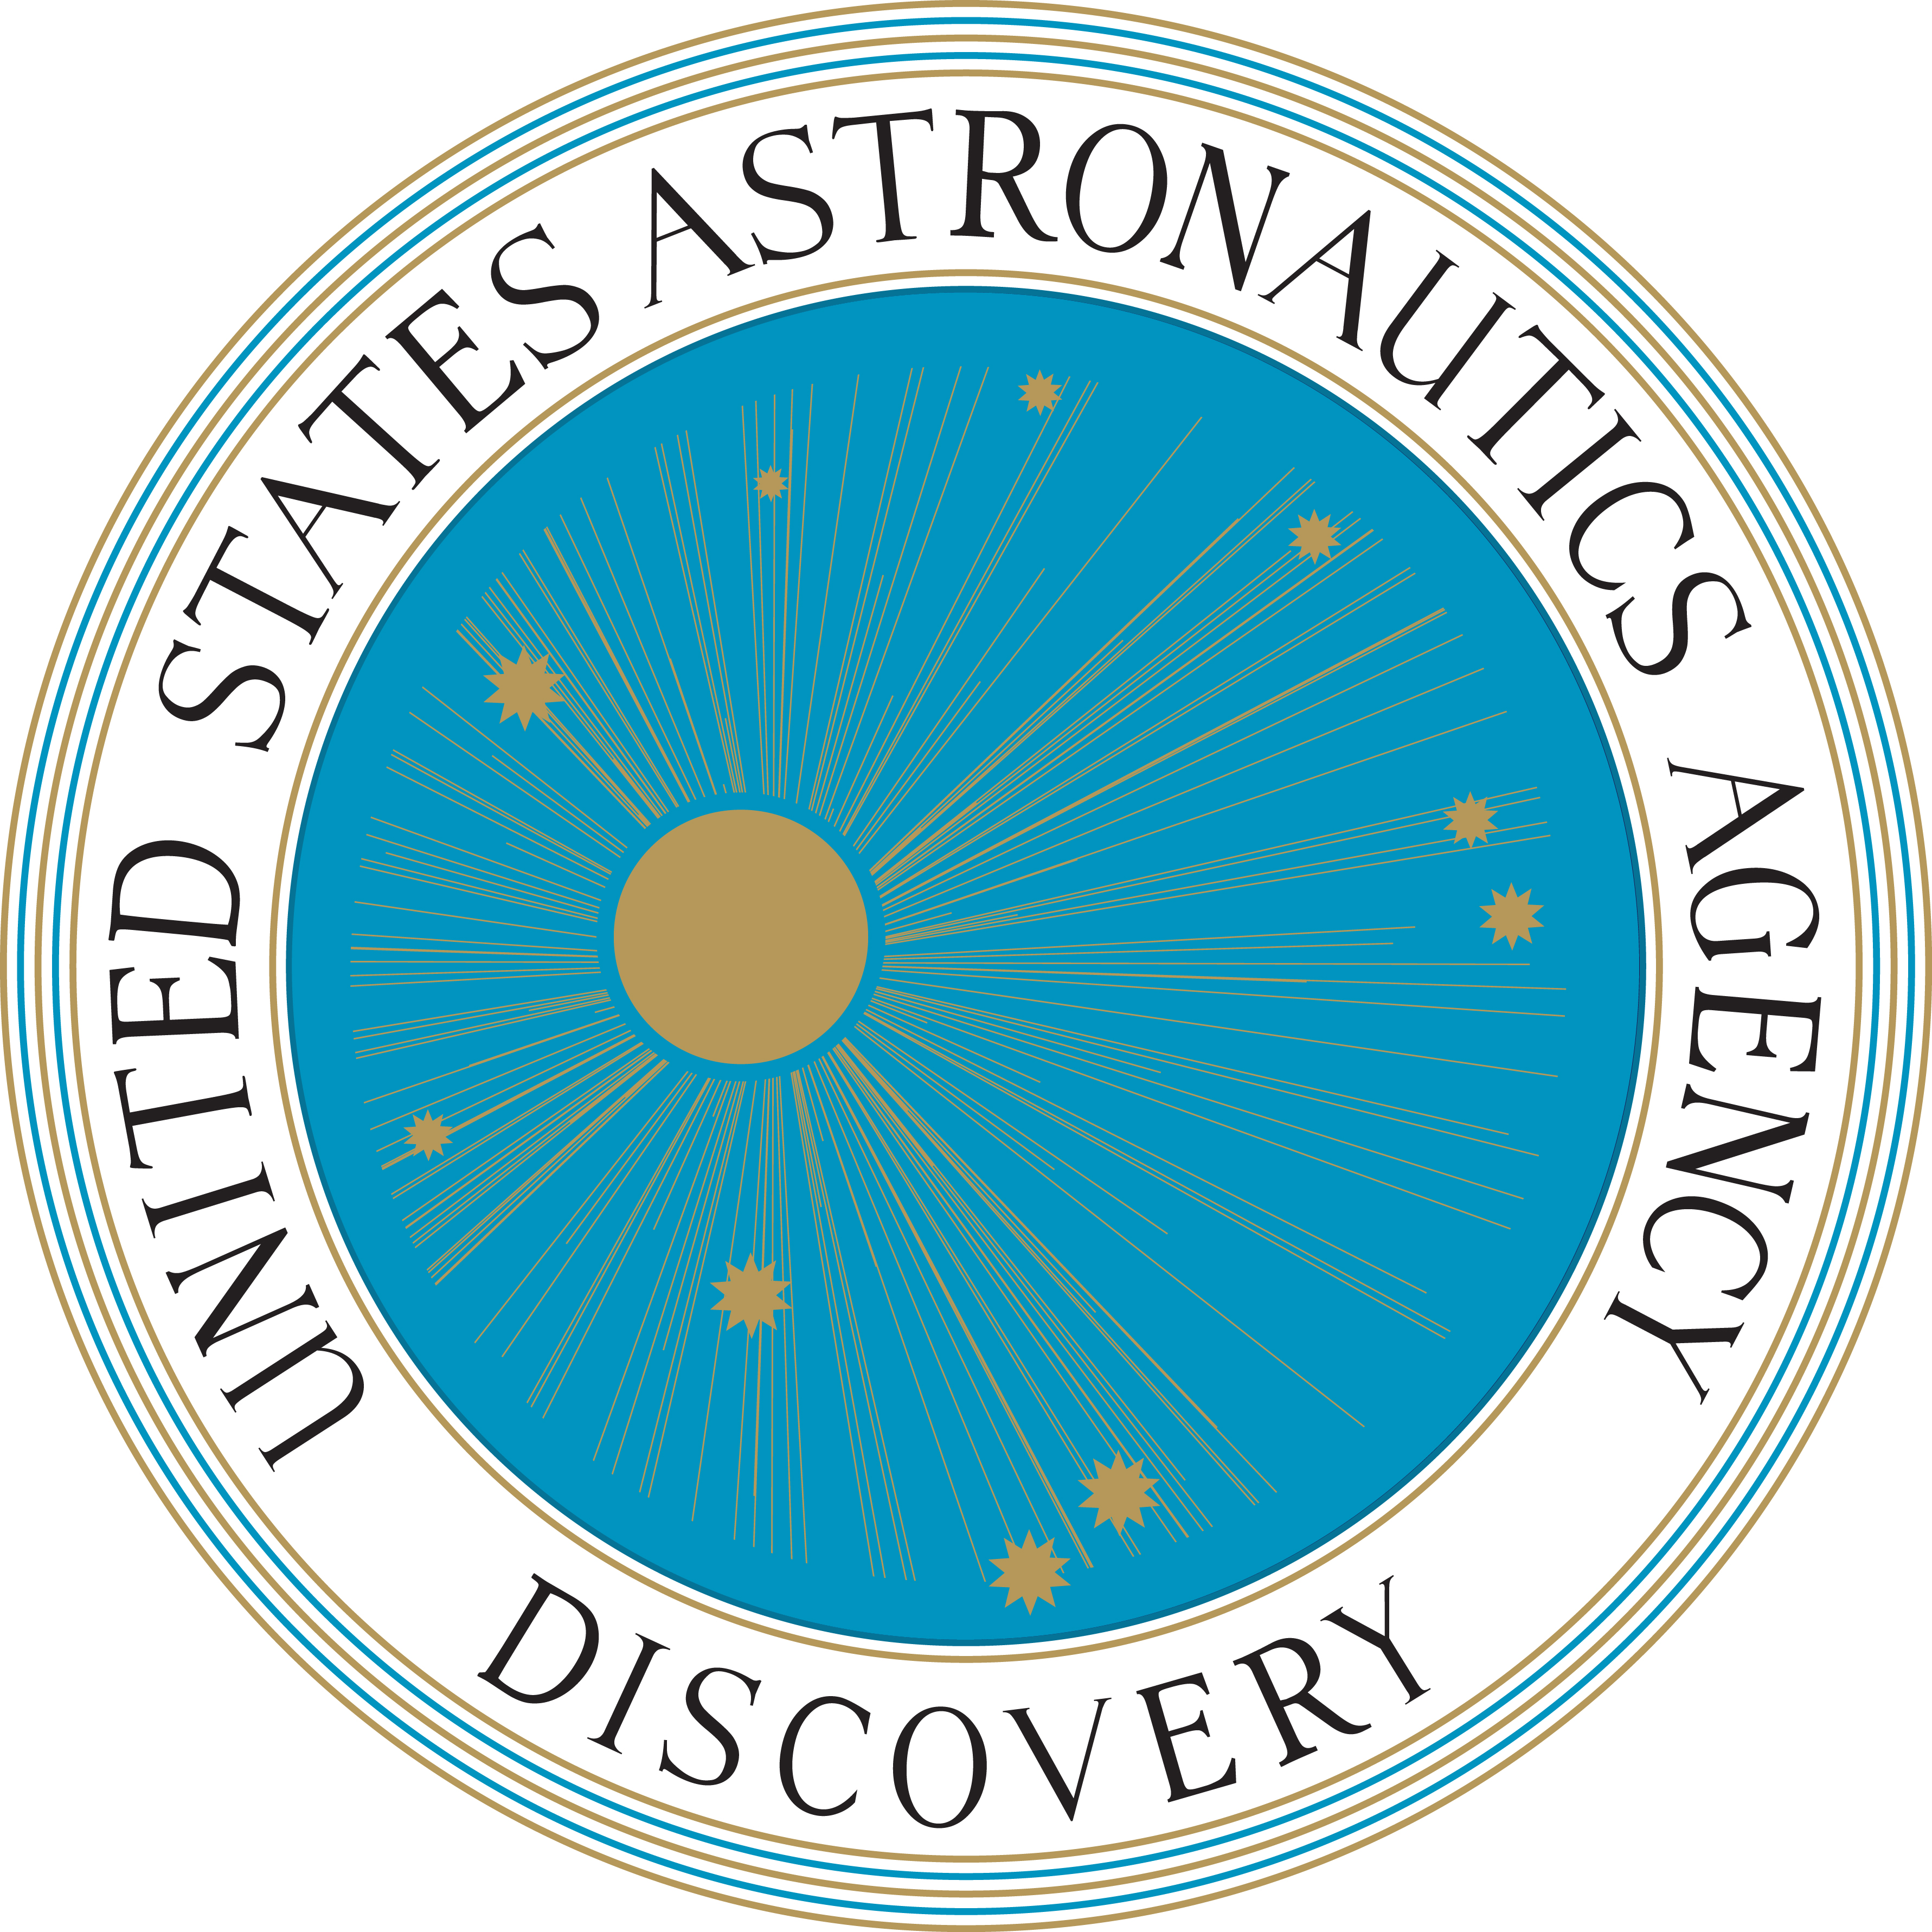 USAA Logo - Discovery.jpg